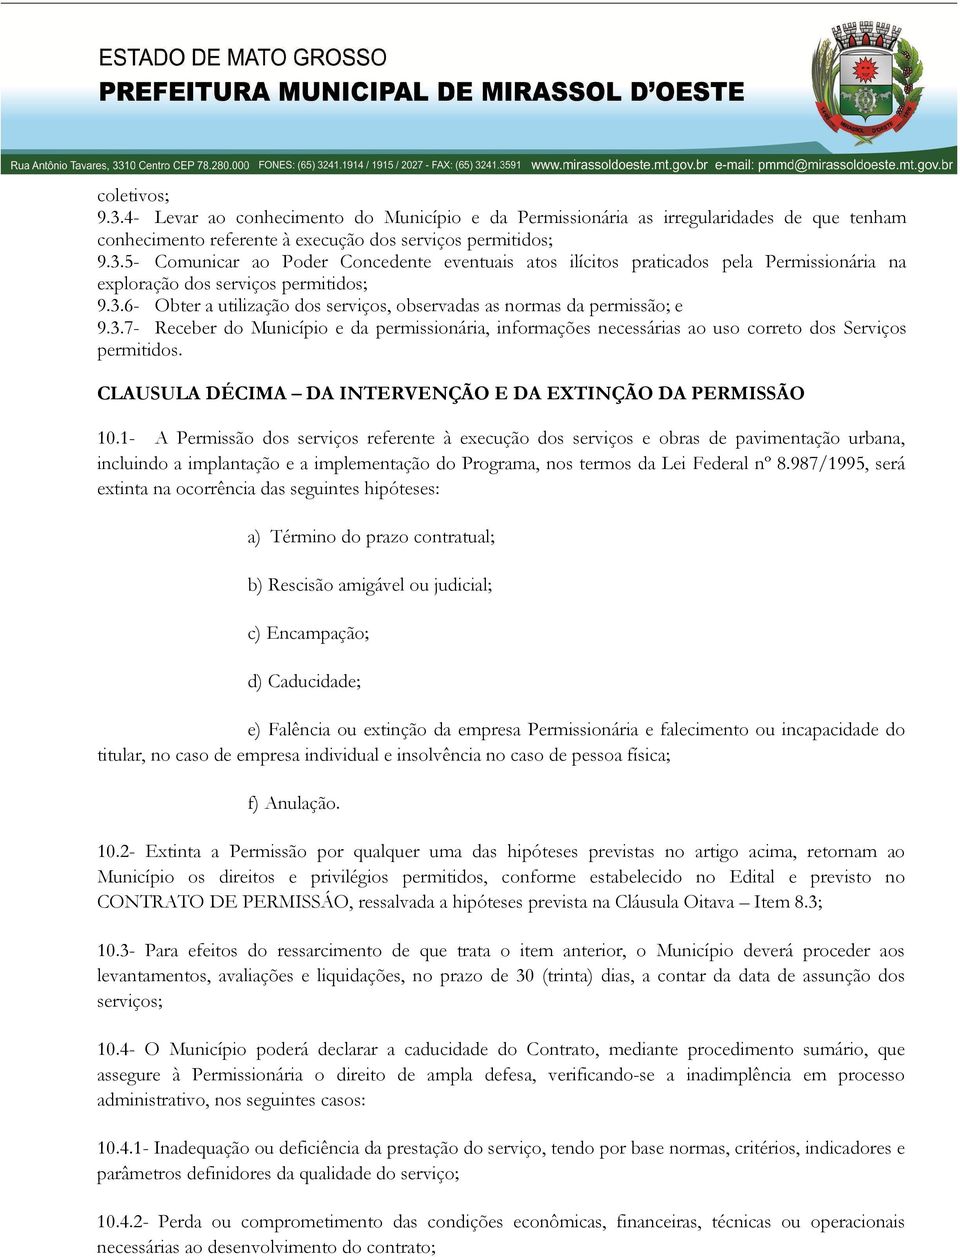 CLAUSULA DÉCIMA DA INTERVENÇÃO E DA EXTINÇÃO DA PERMISSÃO 10.